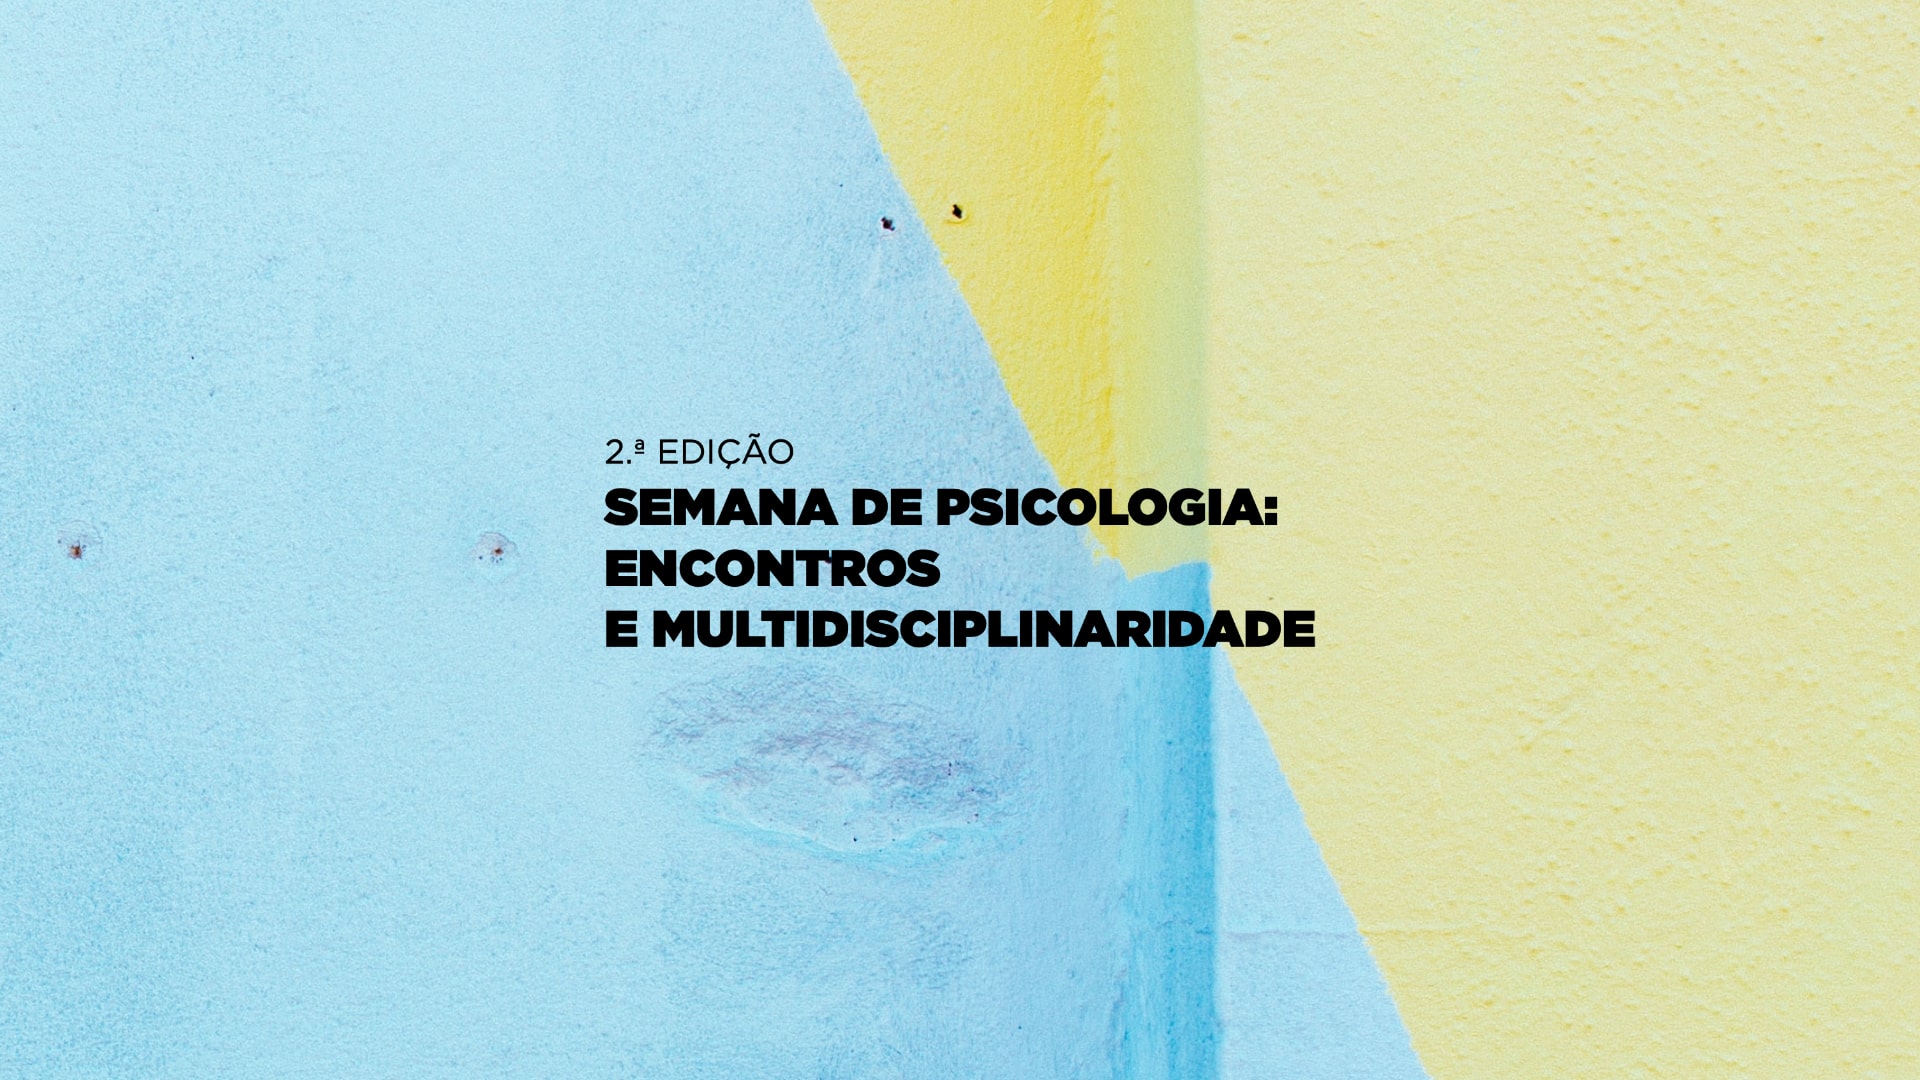 2ª Edição da Semana de Psicologia acontece no Instituto Piaget de Viseu